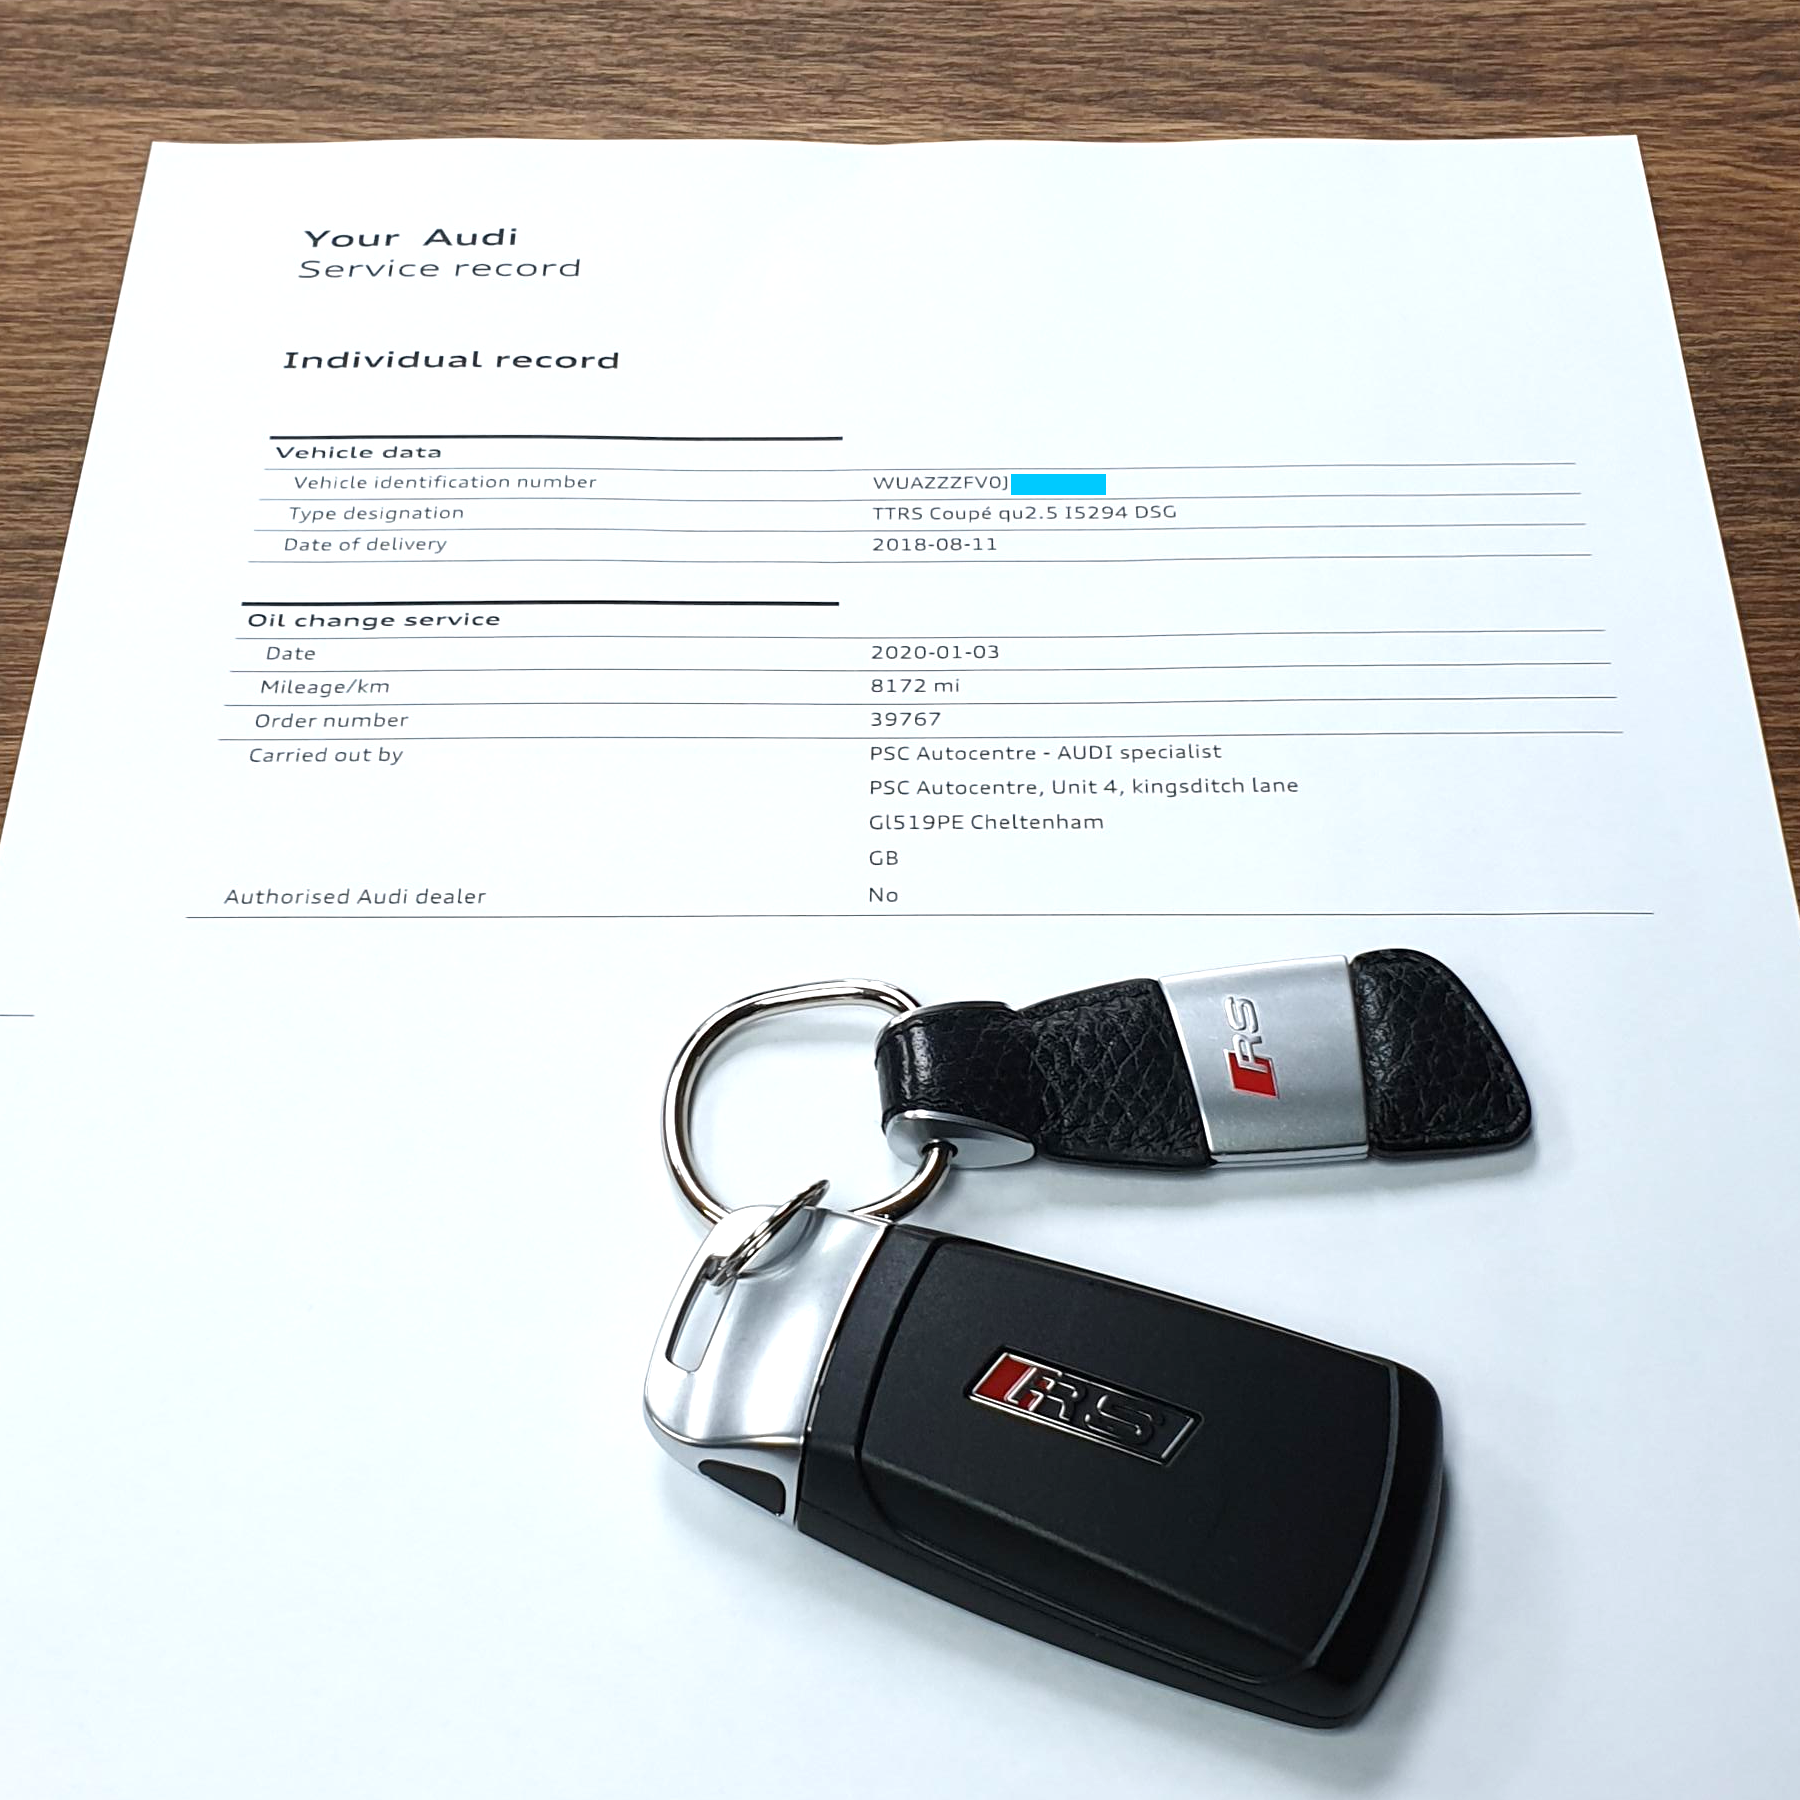 Audi TT RS 2.5 TFSi Servicing (2014-2023) - Choose Minor, Medium or Major